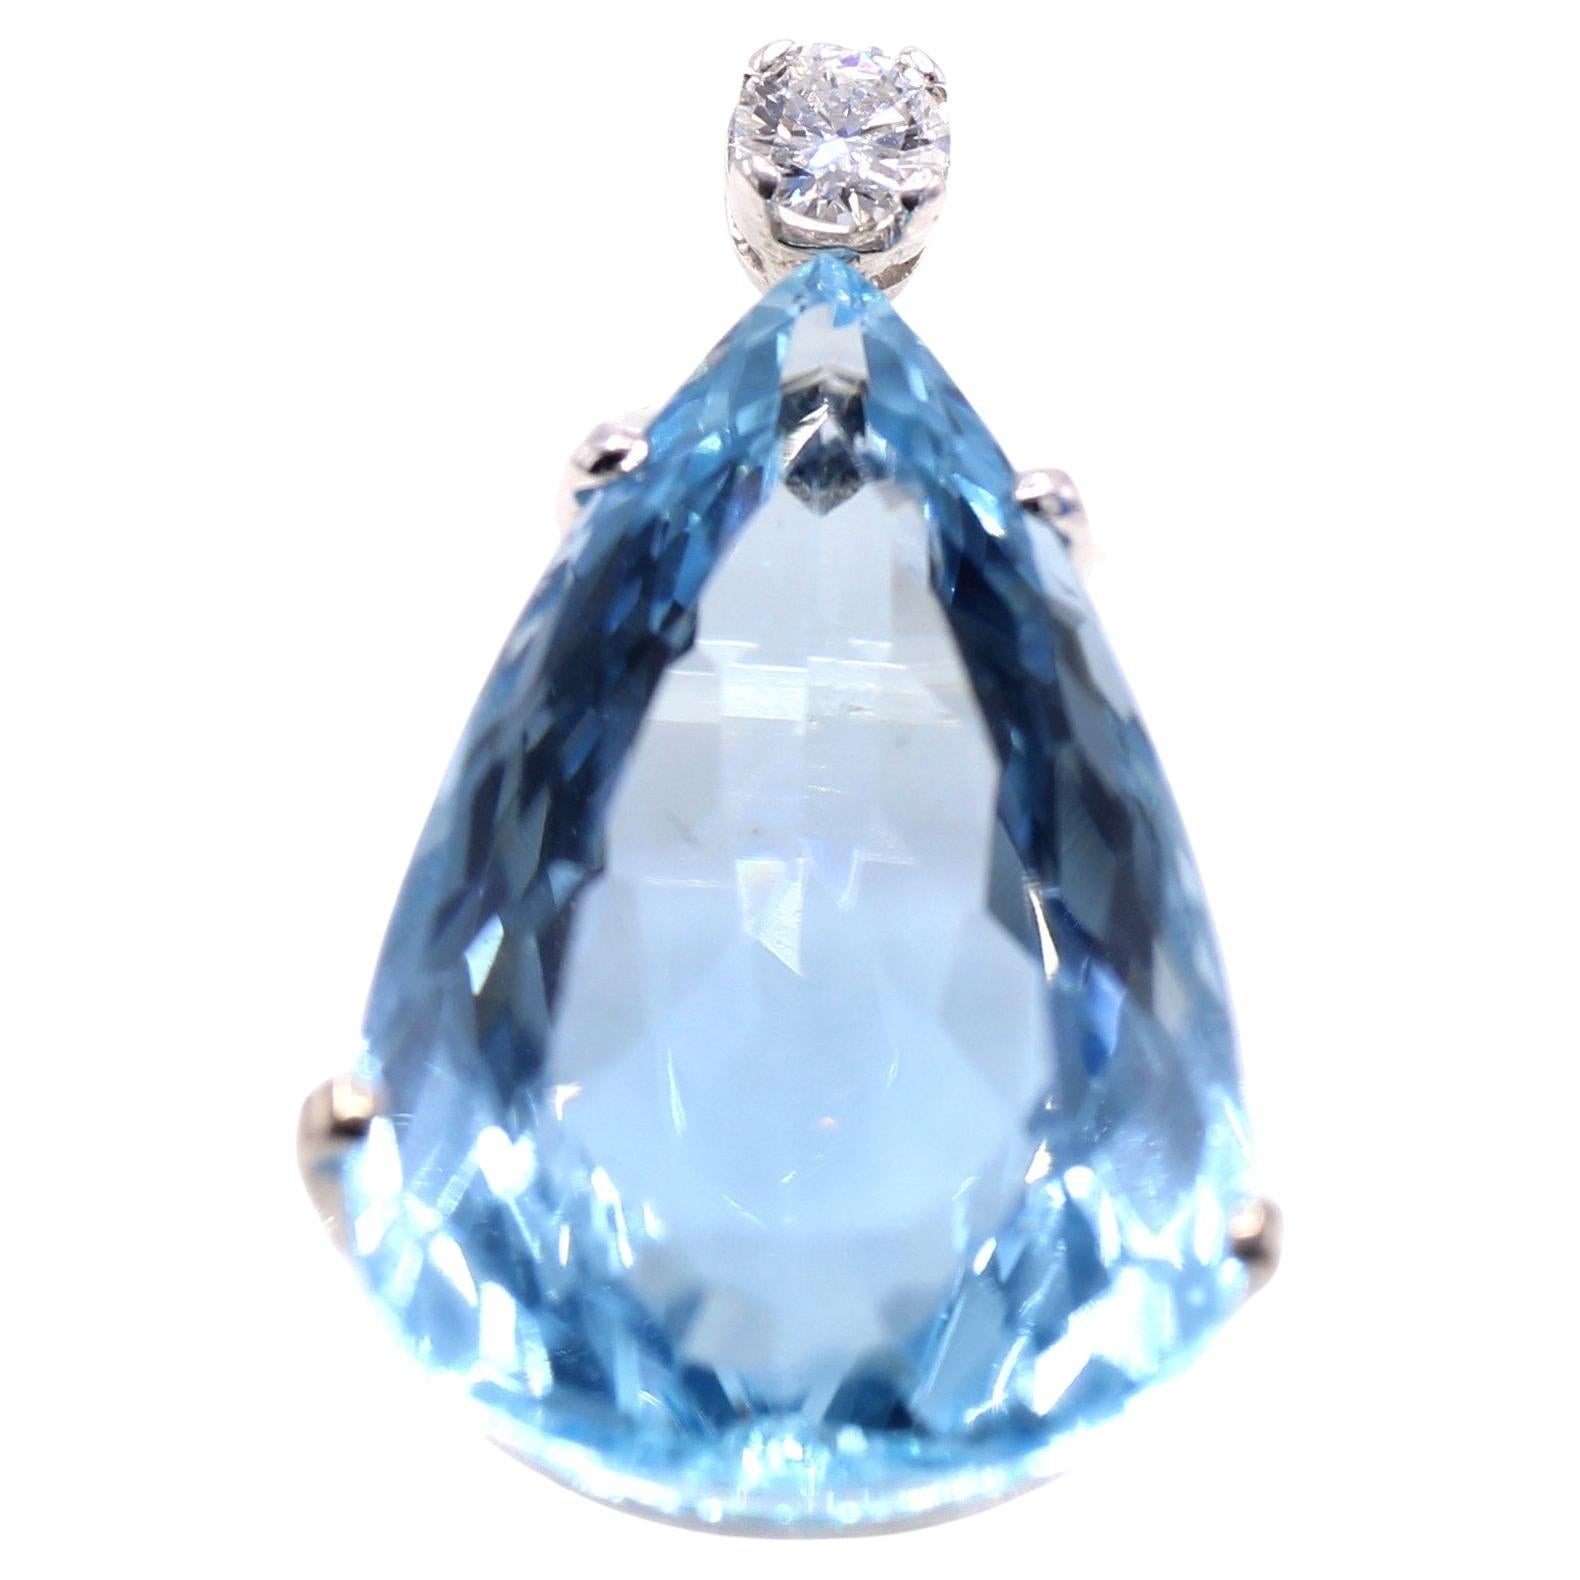 Une aigue-marine bleue Santa Maria en forme de poire magnifiquement taillée est la pièce centrale de ce joli pendentif. Serti dans un pendentif artisanal en or blanc 18 carats avec un diamant blanc brillant rond et brillant en haut de l'anneau. Le